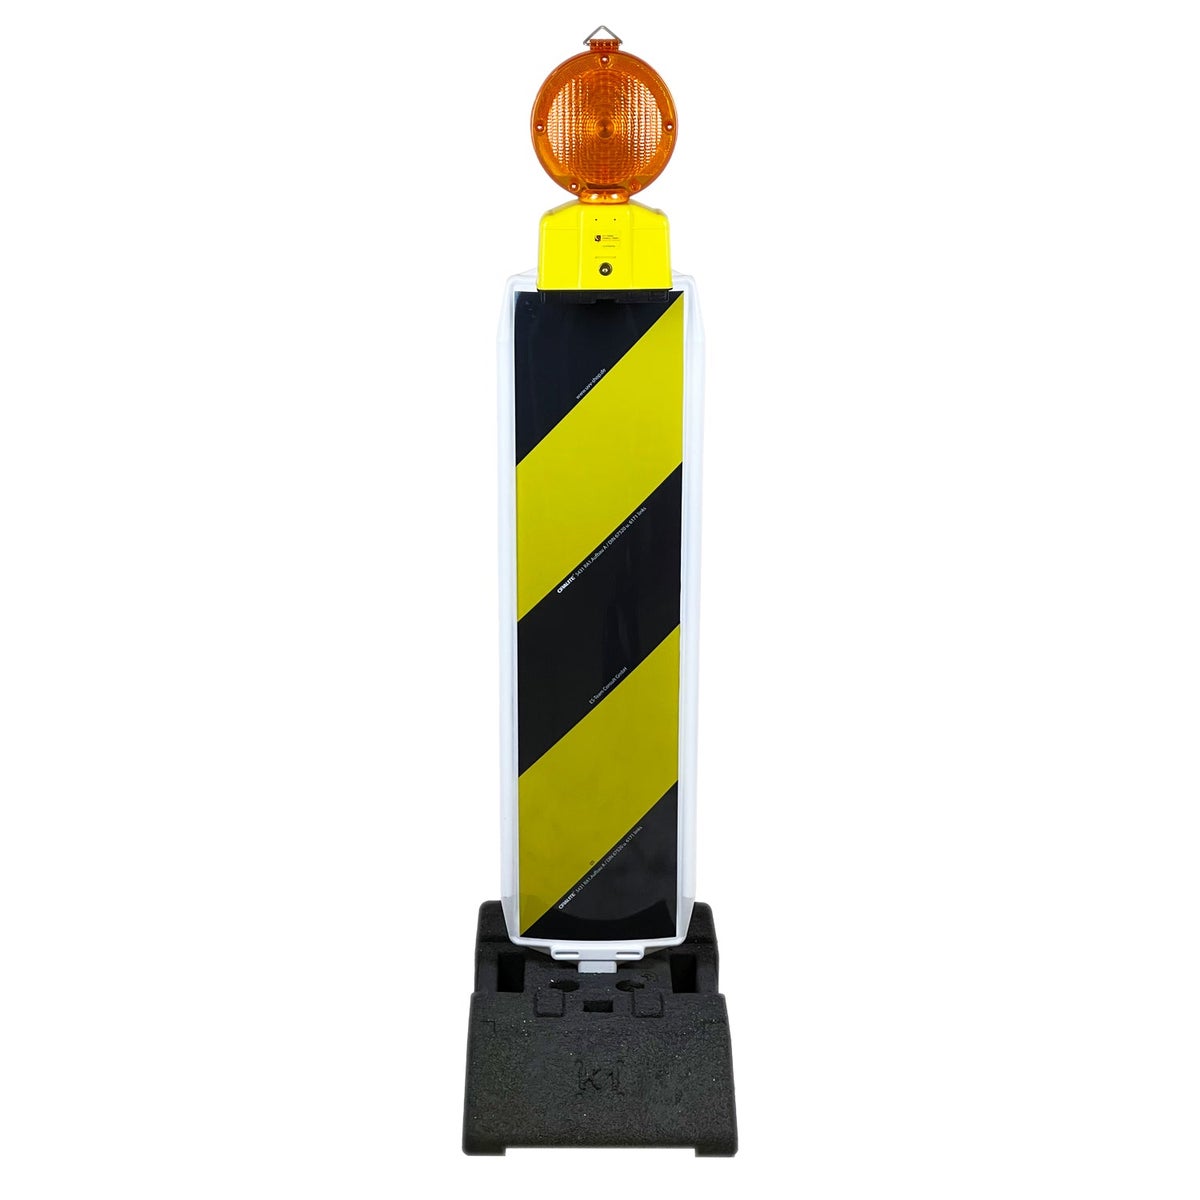 UvV Leitbake Fußplatte (18 / 30 kg) Baustelle rot/weiß oder Lager gelb, schwarz / RA1 schwarz / gelb / K1 (28 kg) / Baustellenleuchte gelb ohne Batterien